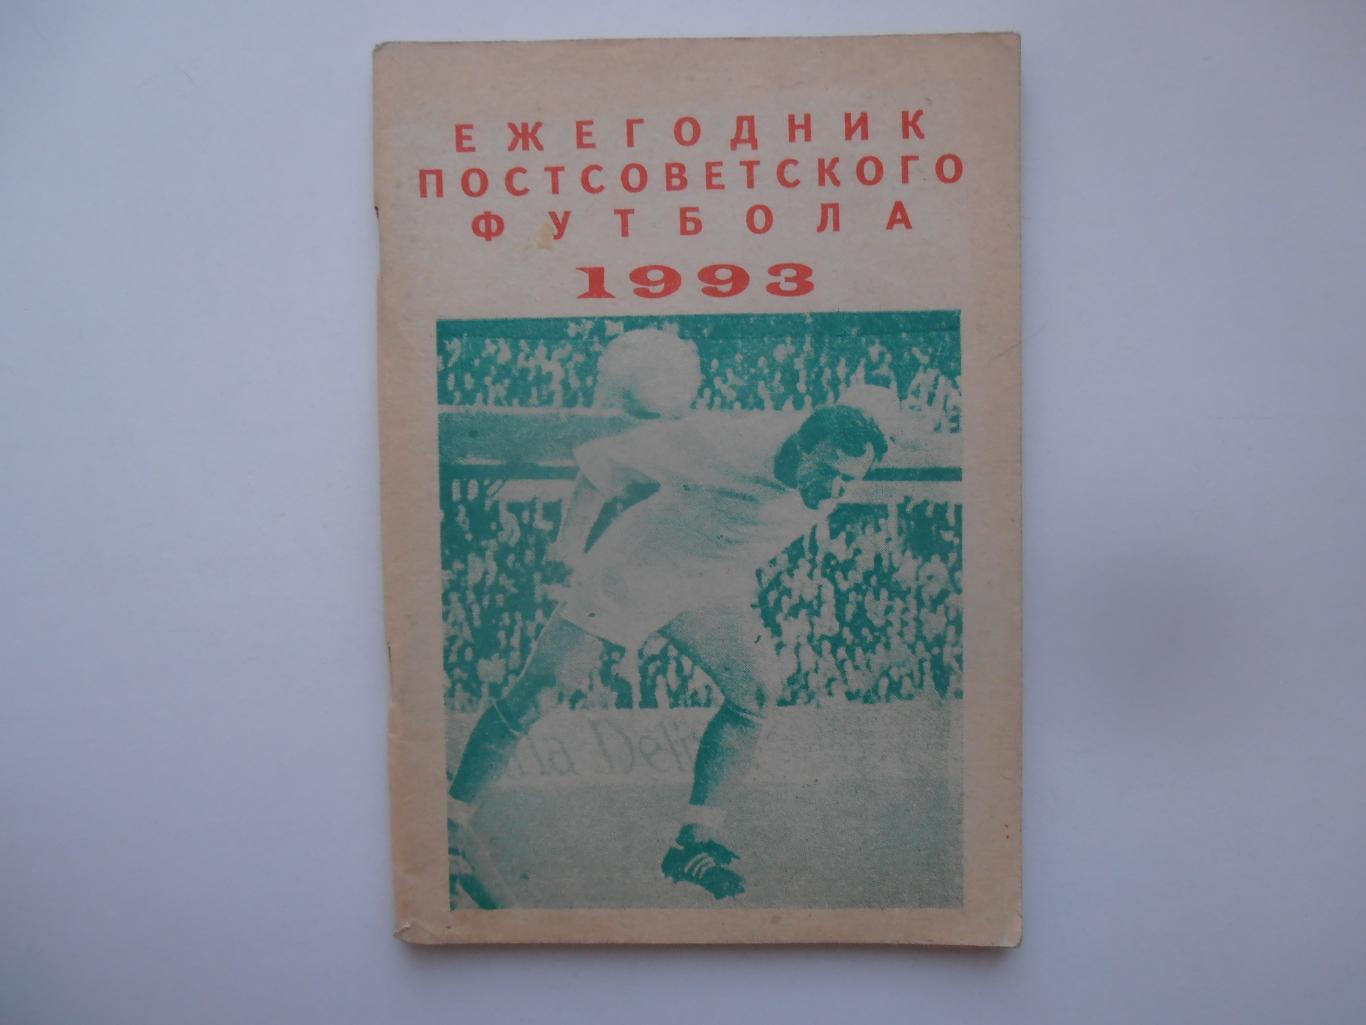 Ежегодник постсоветского футбола 1993